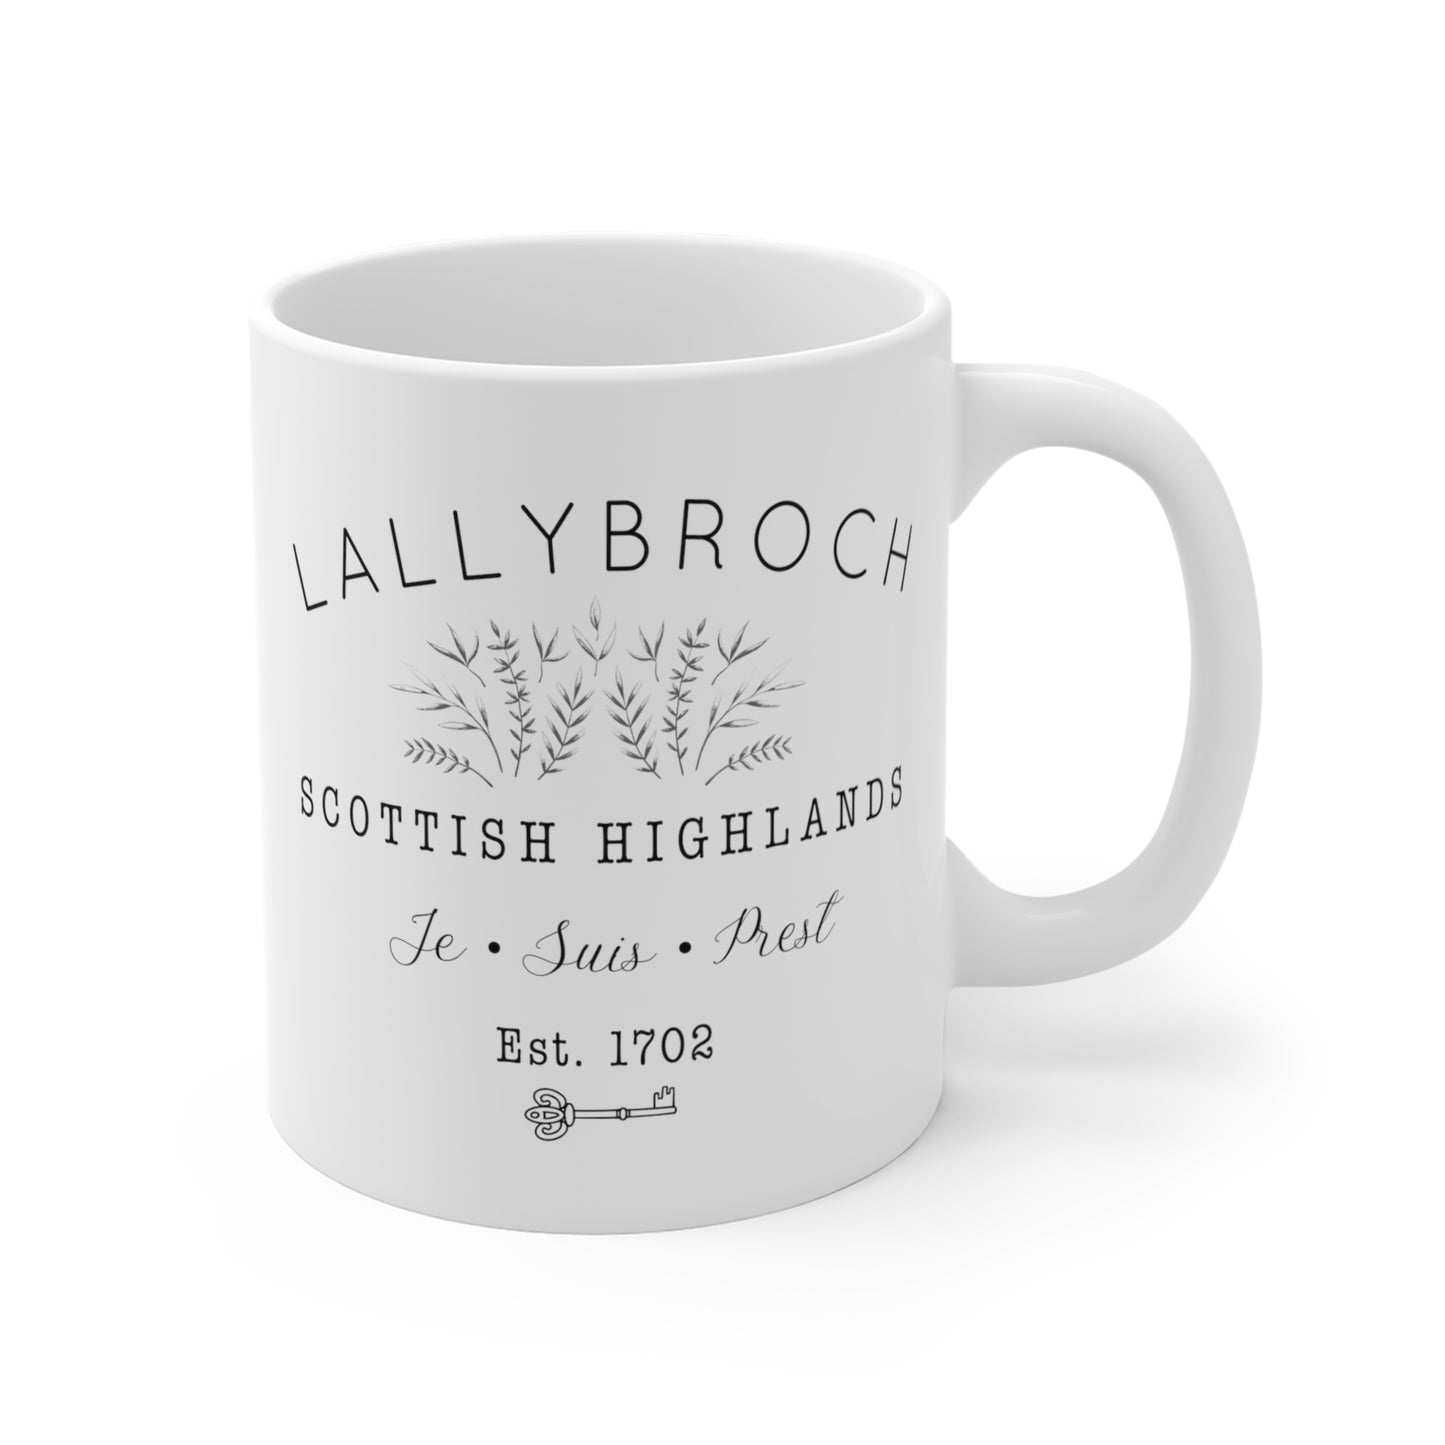 Lallybroch Mug - Outlander Fans